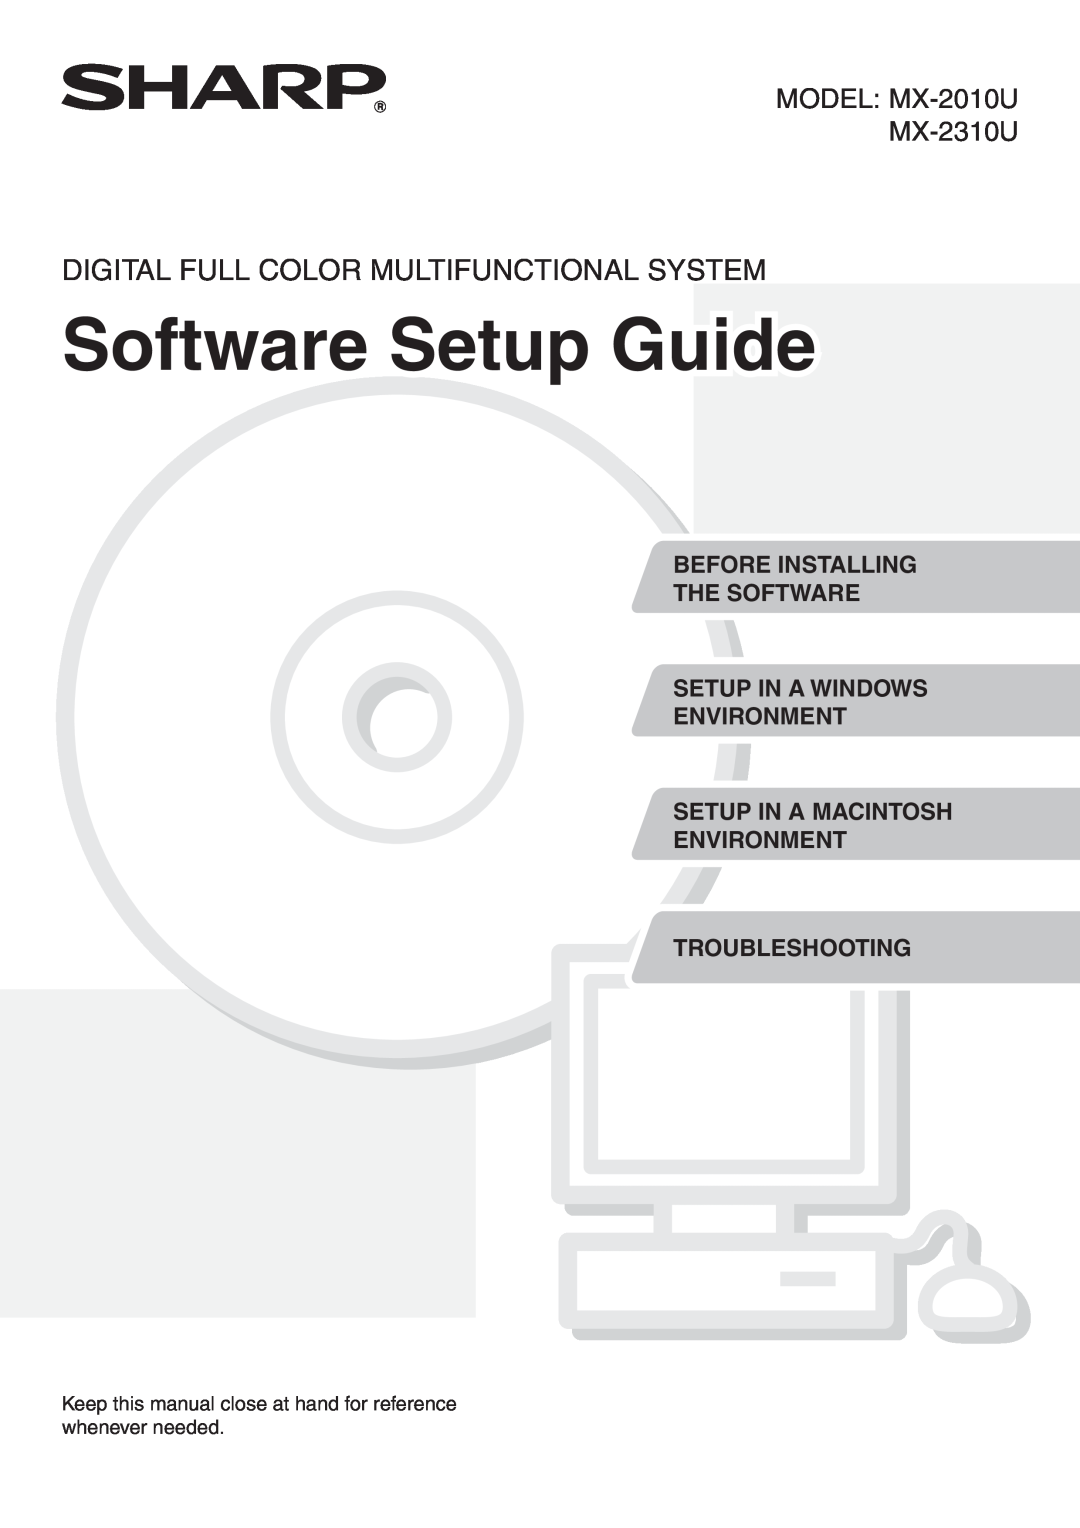 Sharp setup guide Software Setup Guide, Digital Full Color Multifunctional System, MODEL MX-2010U MX-2310U 